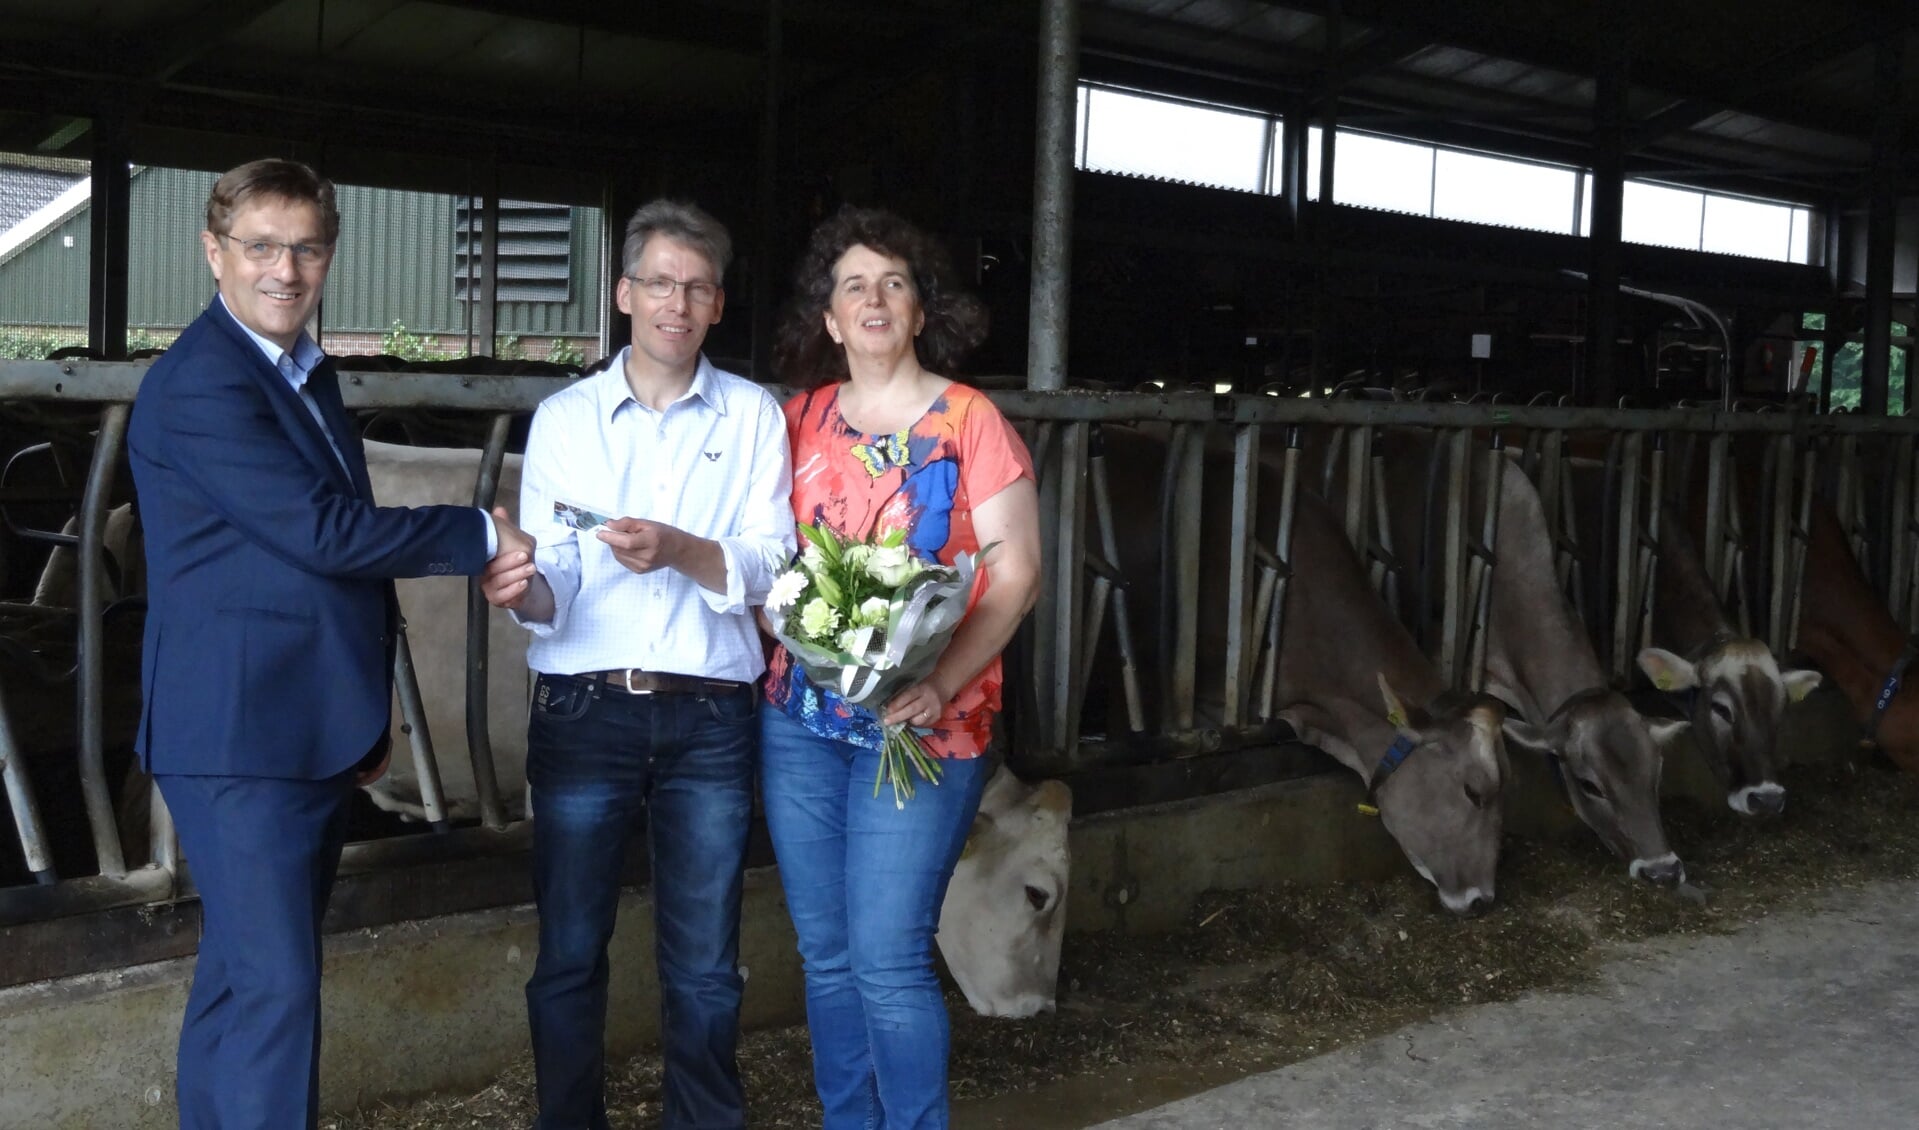 Herman Vrielink overhandigt de prijs aan de familie Zents. Foto: PR